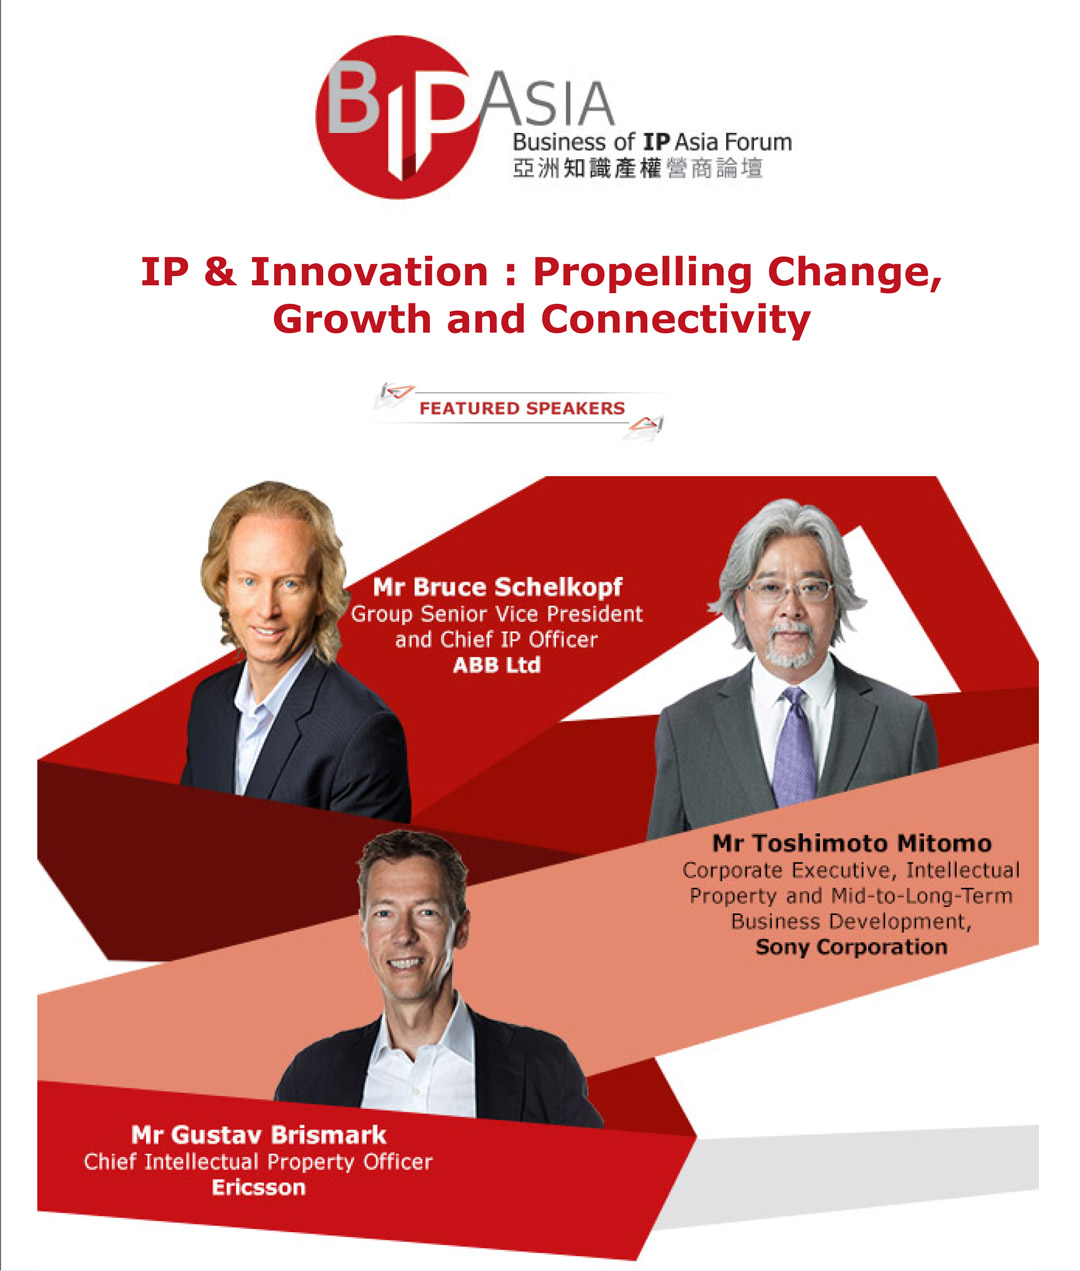 BIP Asia Forum 2017